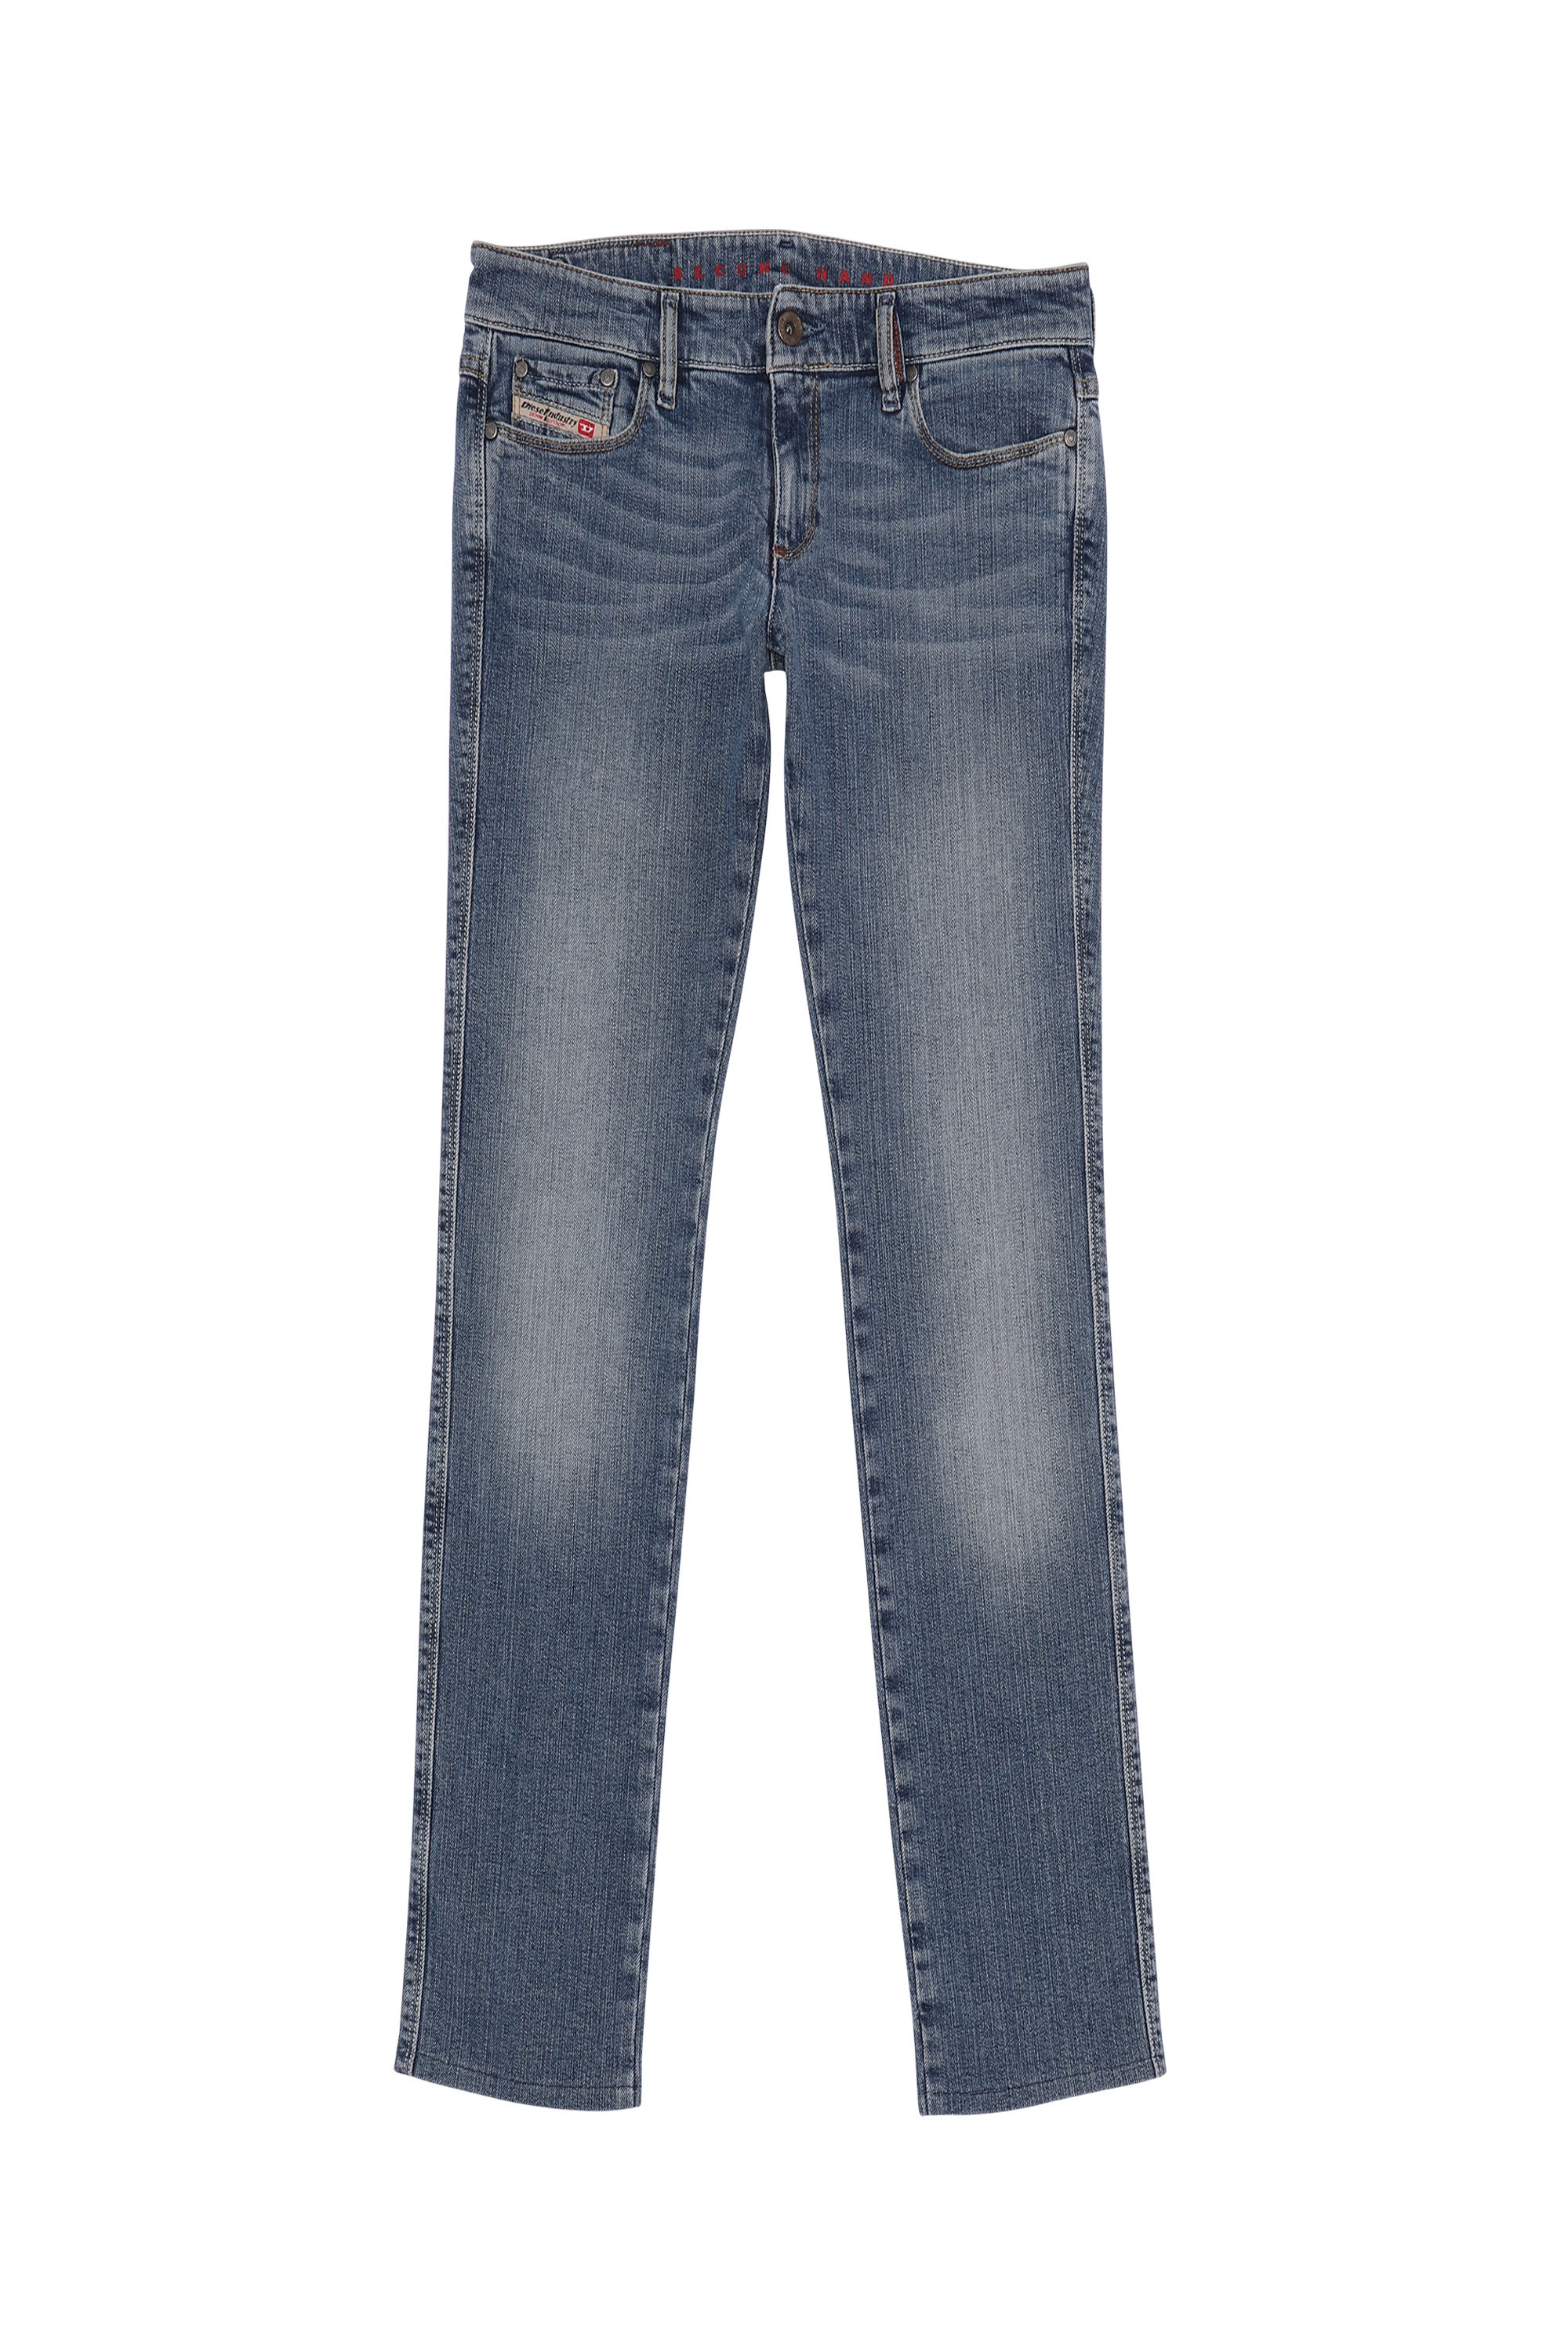 SH DENIM PANT, Medium blue - Jeans